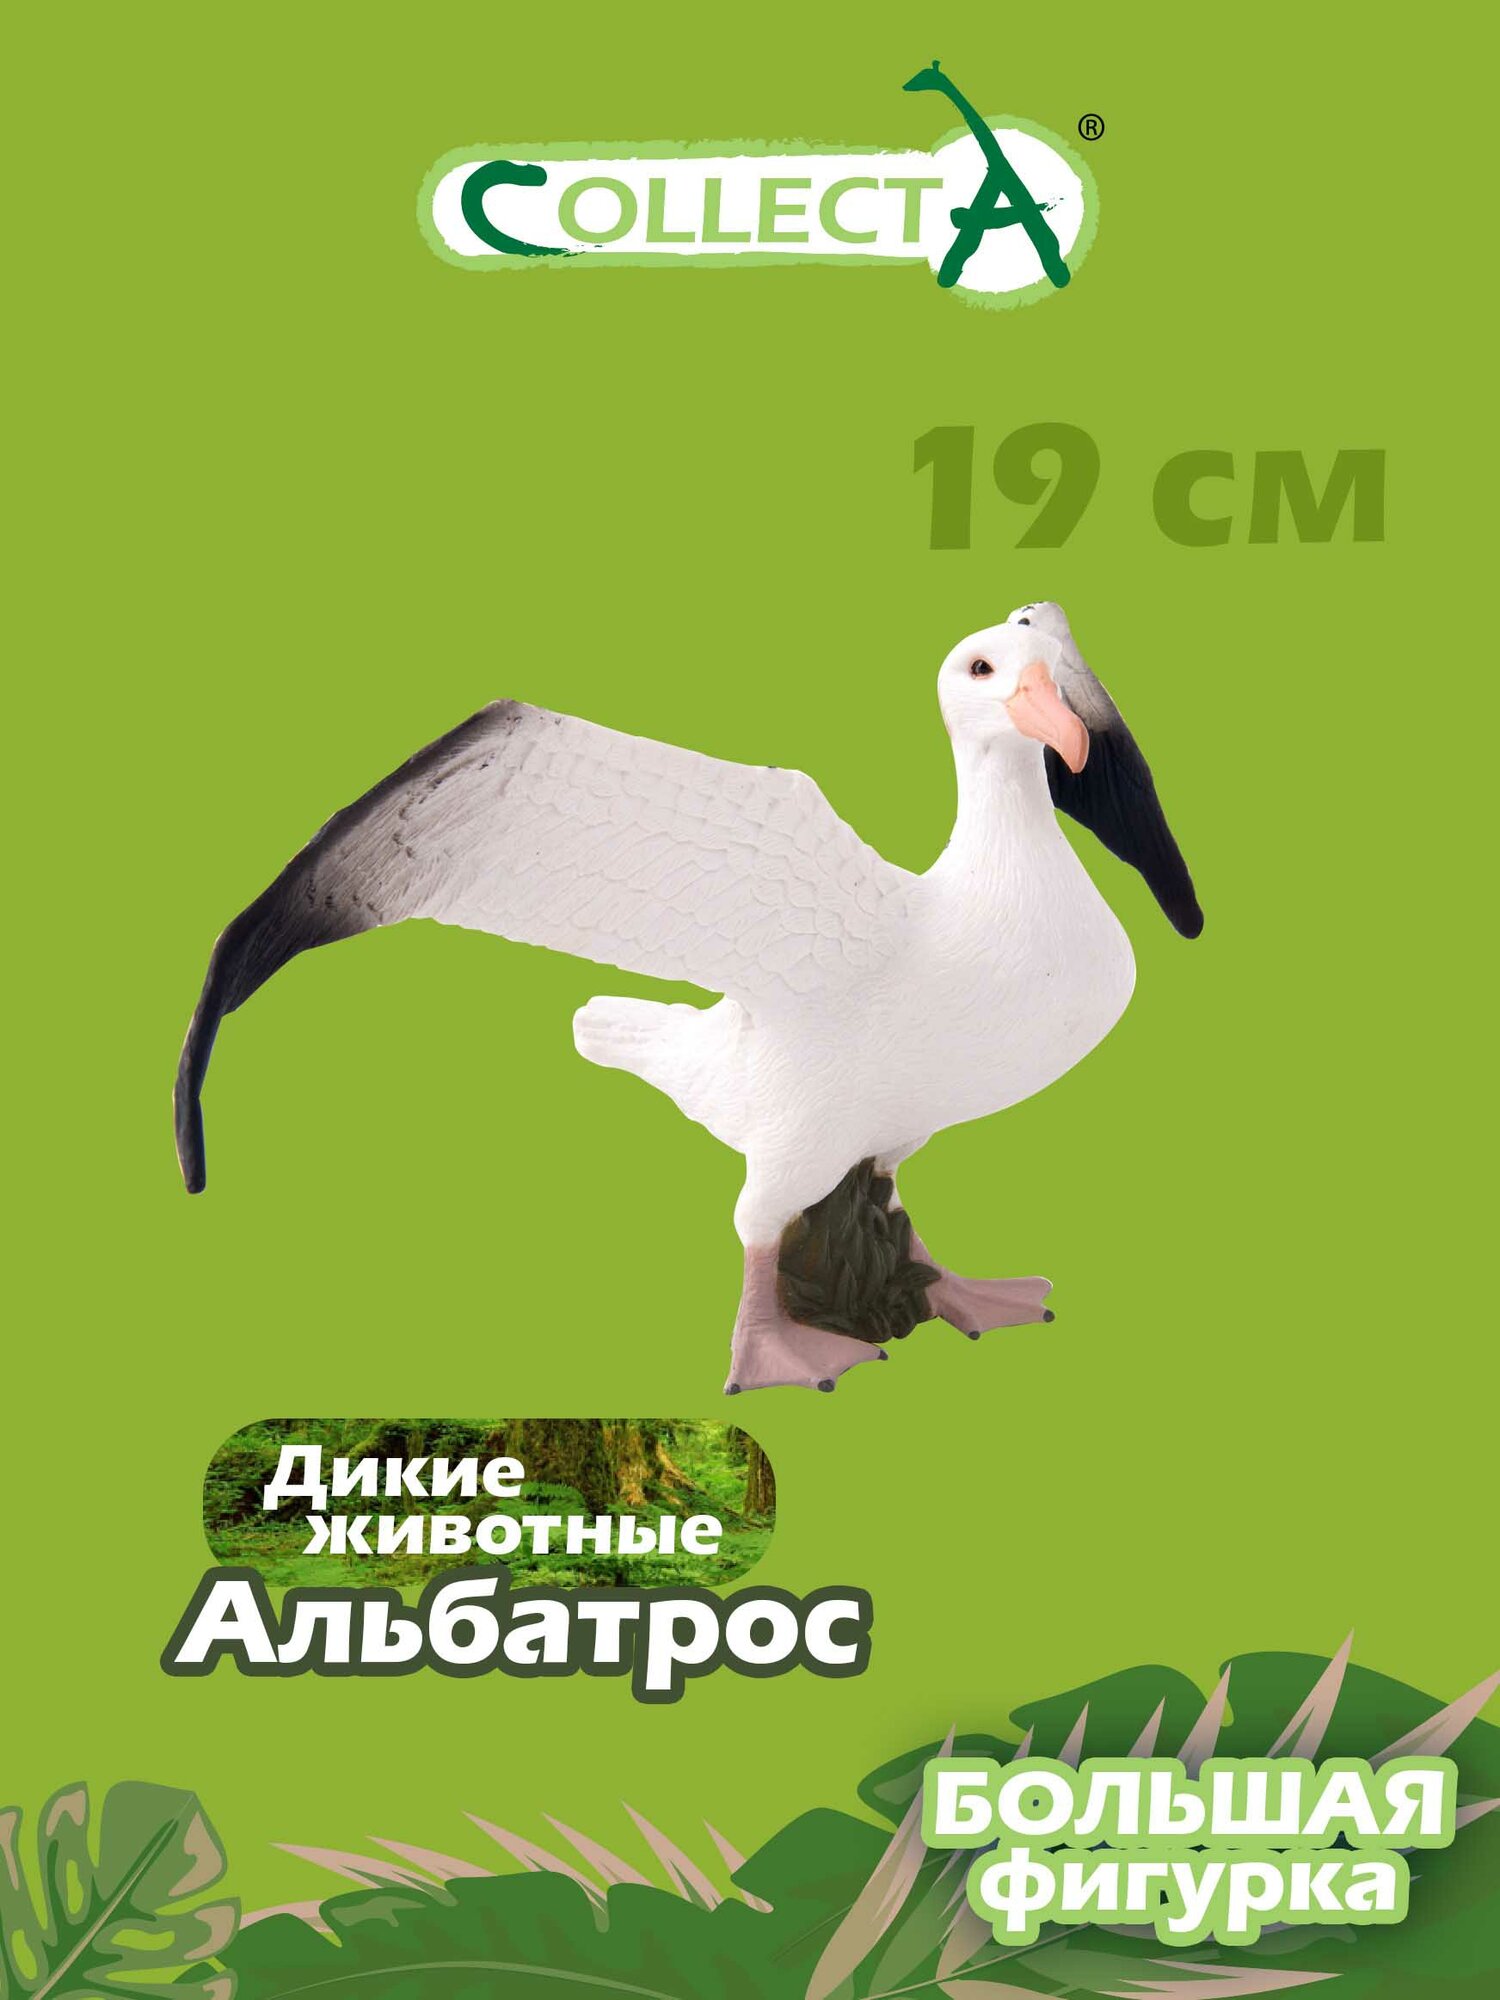 Фигурка птицы Collecta, Странствующий альбатрос